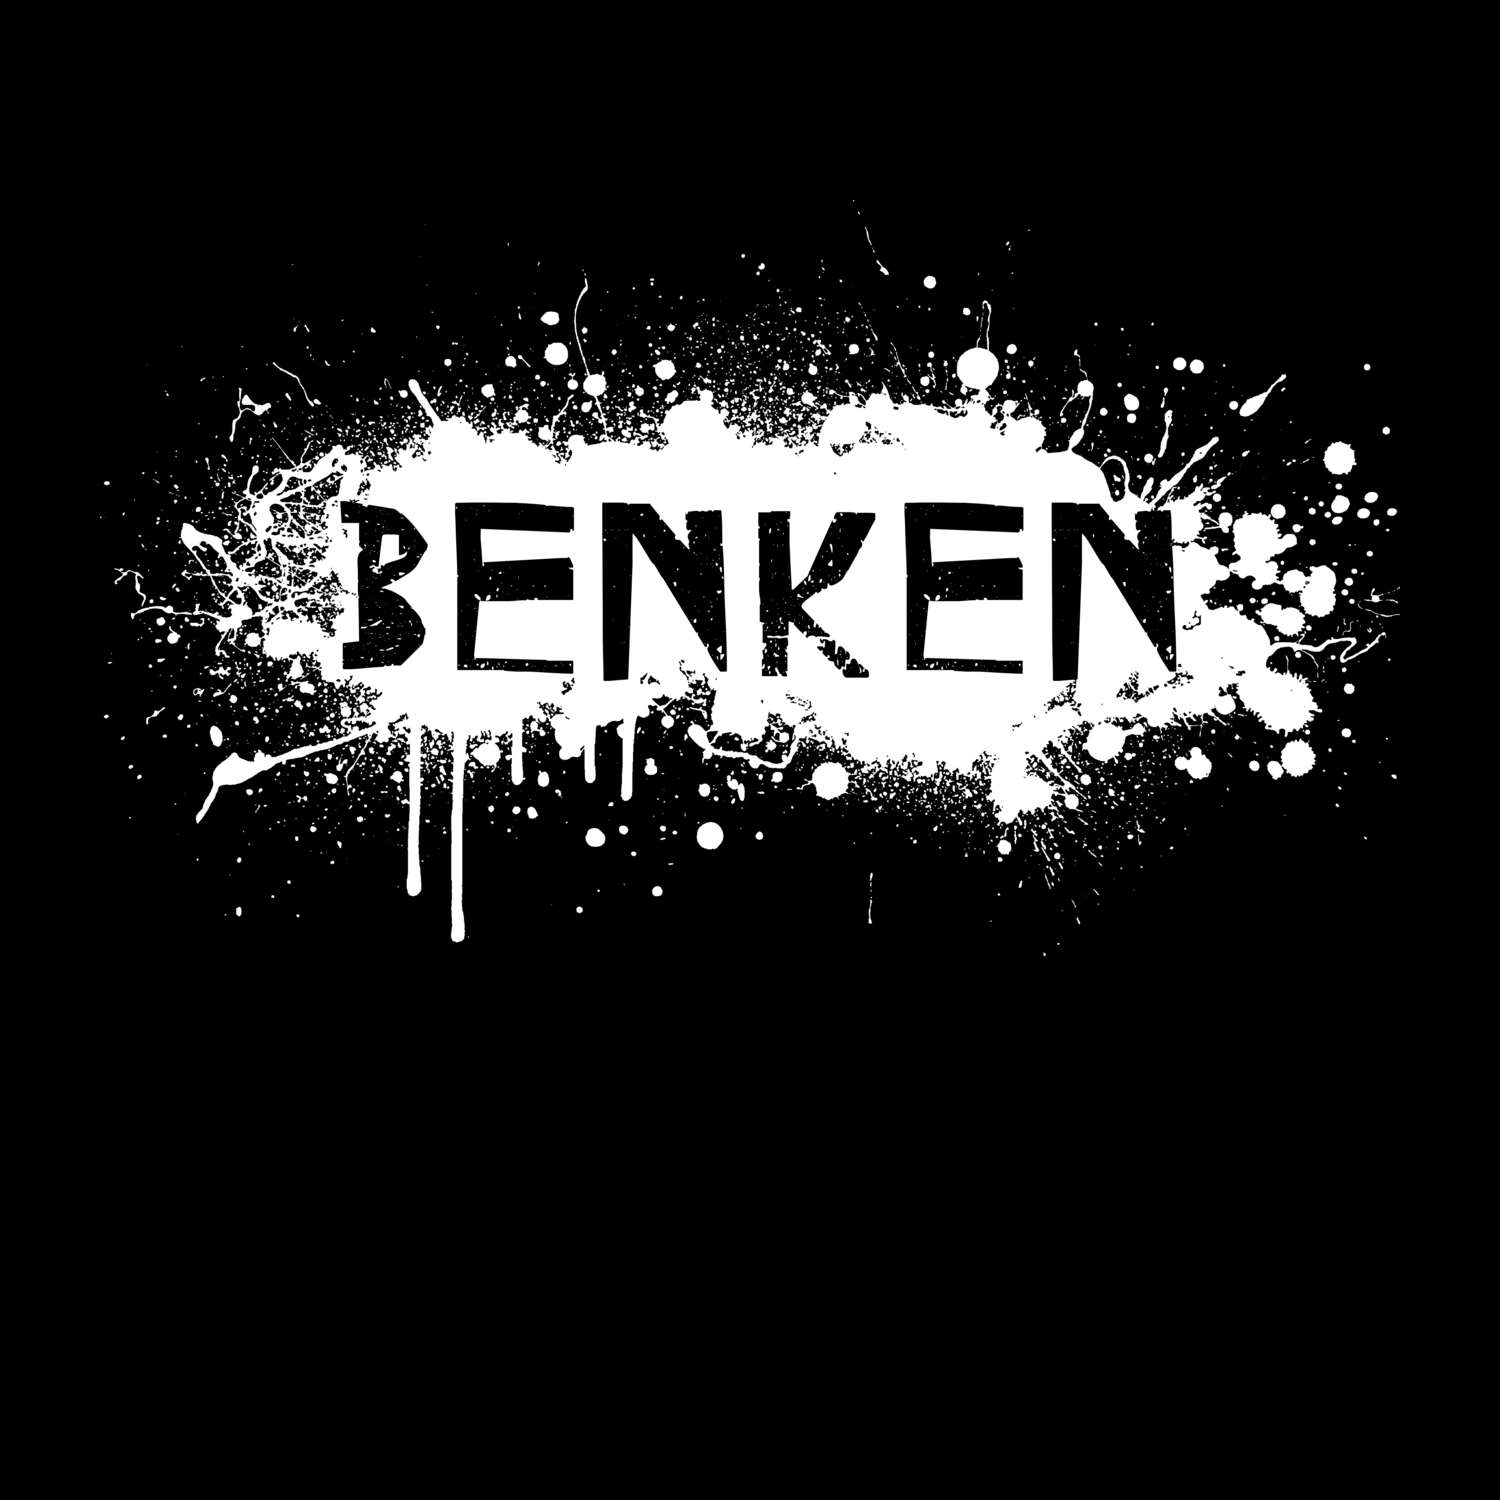 Benken T-Shirt »Paint Splash Punk«